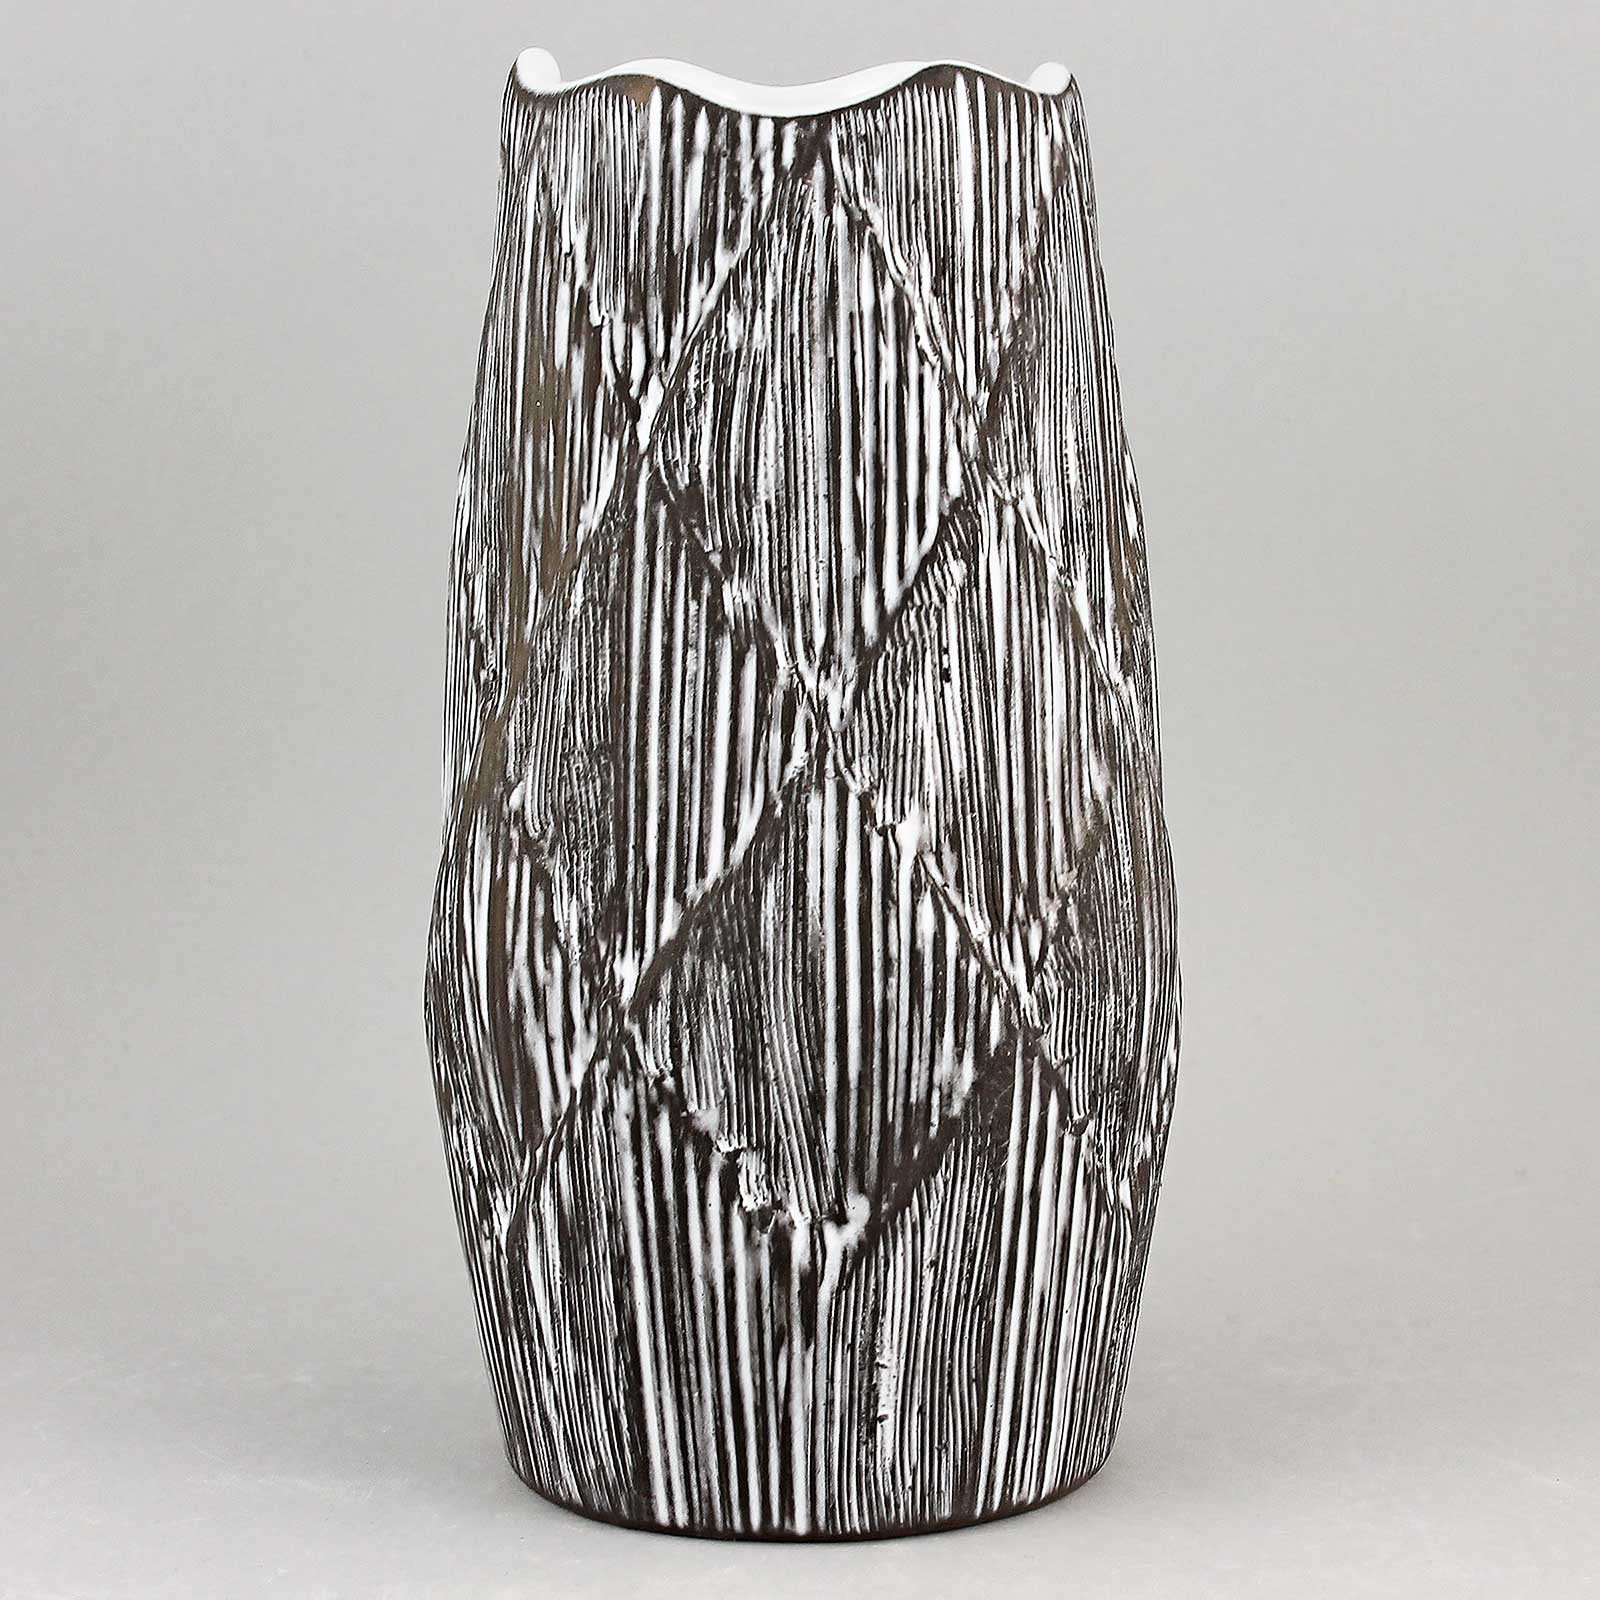 30 Lovely Black and White Ceramic Vase 2024 free download black and white ceramic vase of sven erik skawonius pinus 1968 brilliant knobby vase for 158140339 origpic ef5a83